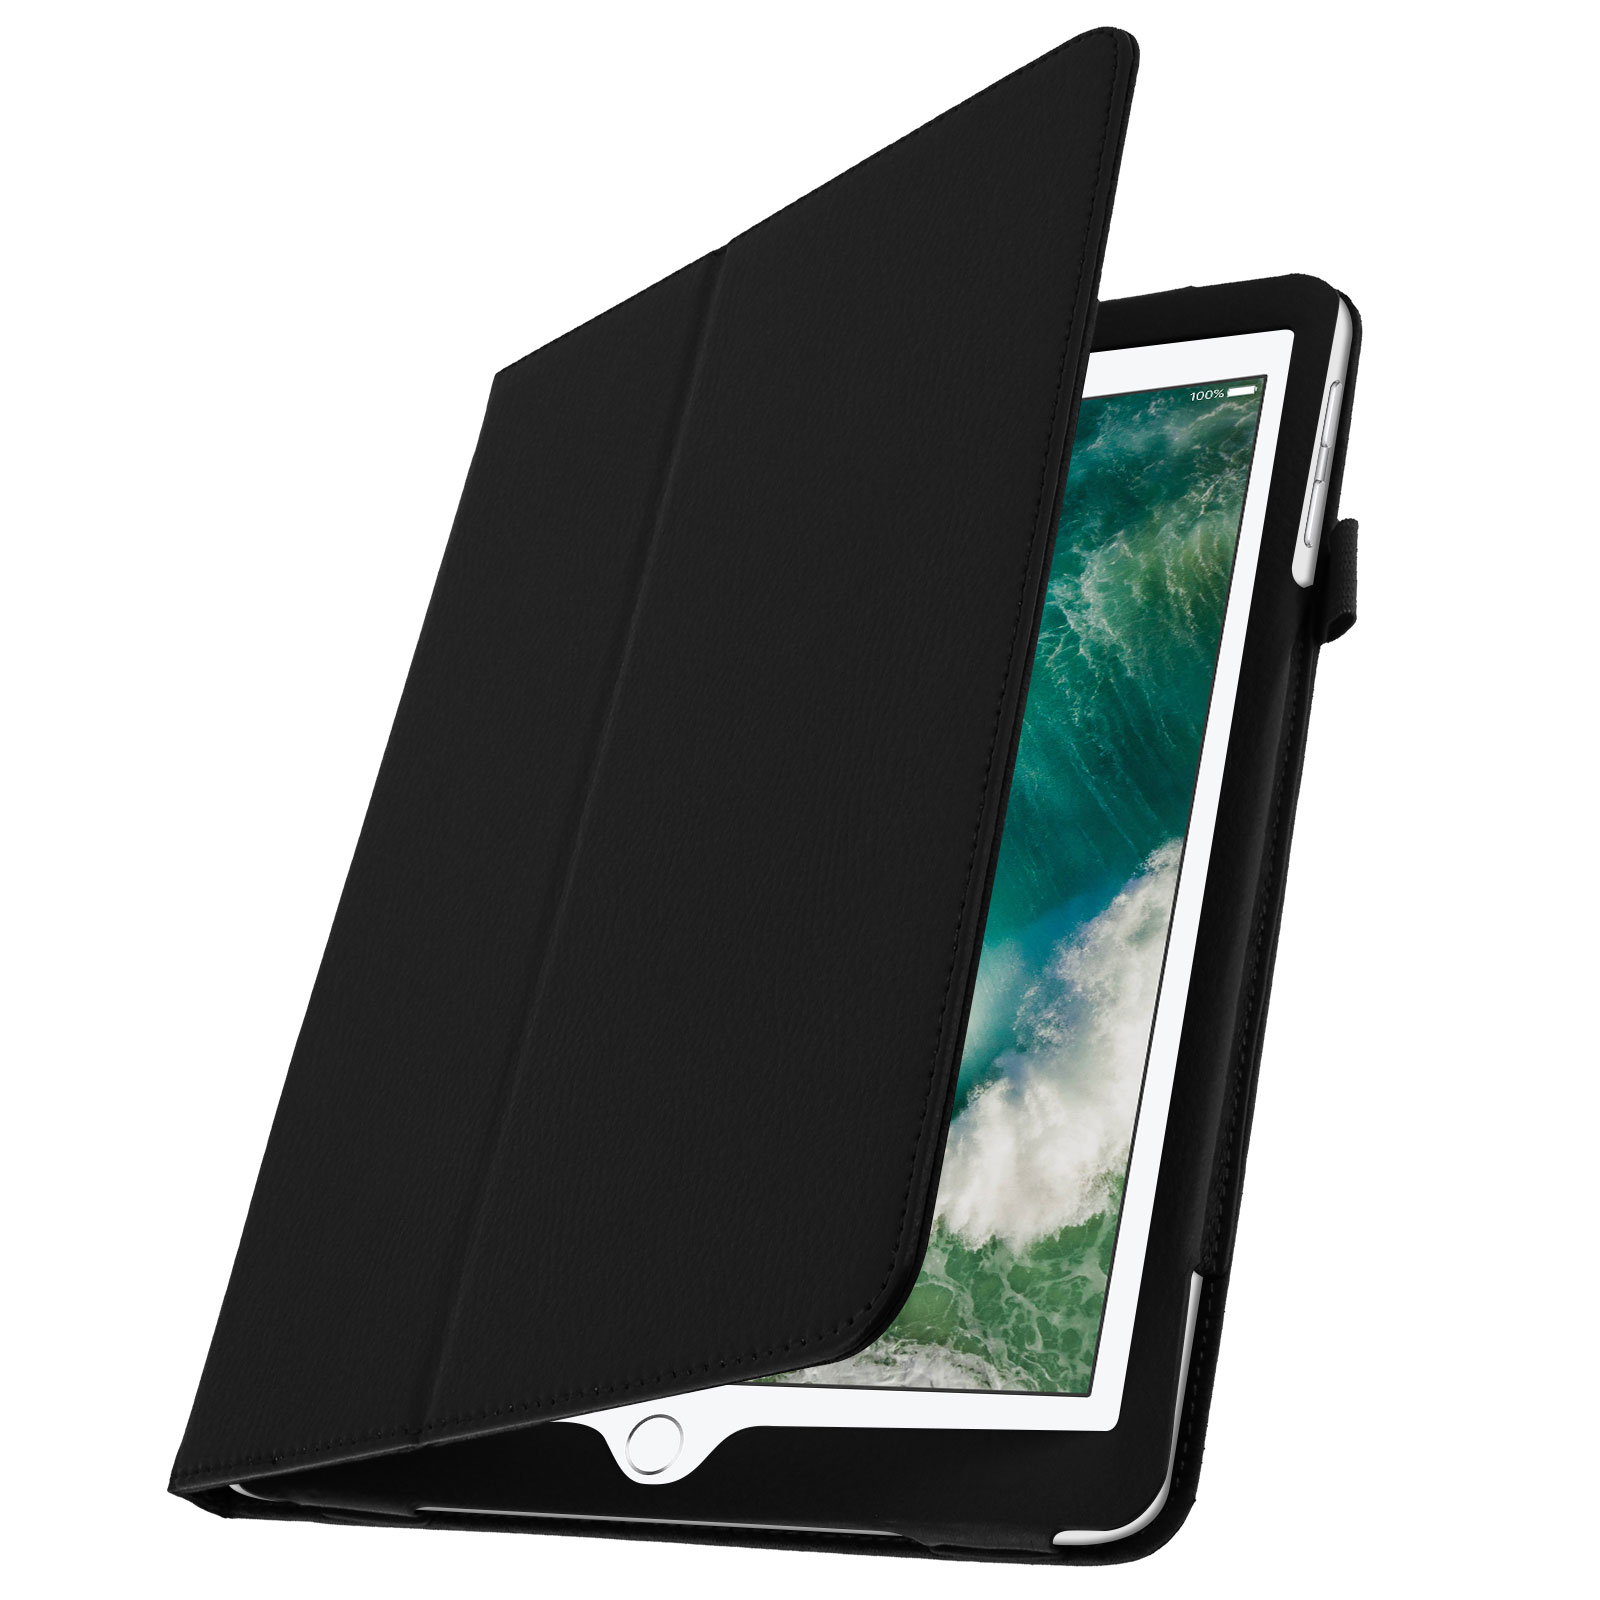 Protecteurs d'écran pour tablette et iPad : Accessoires pour